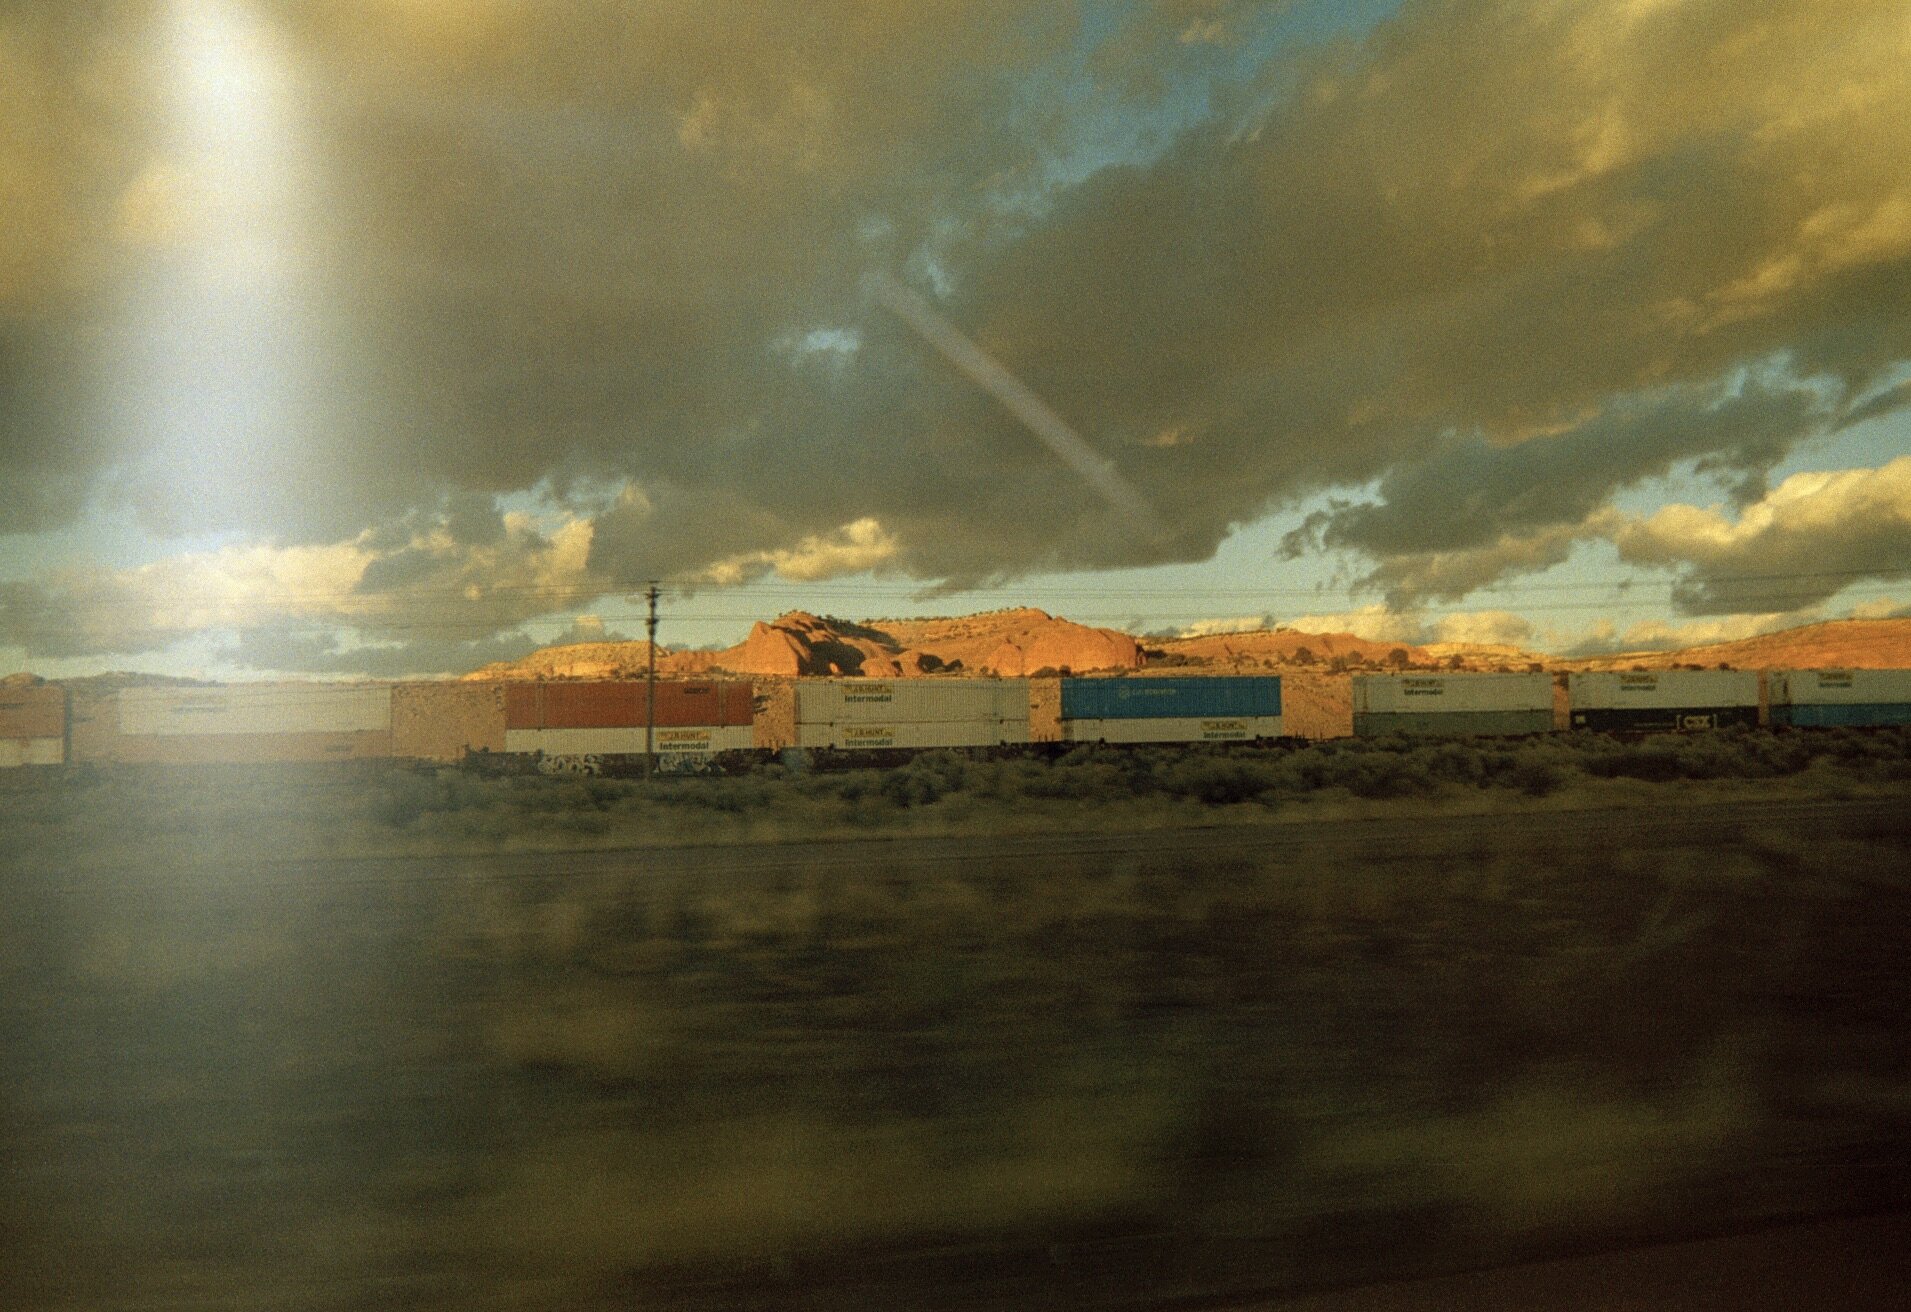 dusk train, desert land  copy.jpg